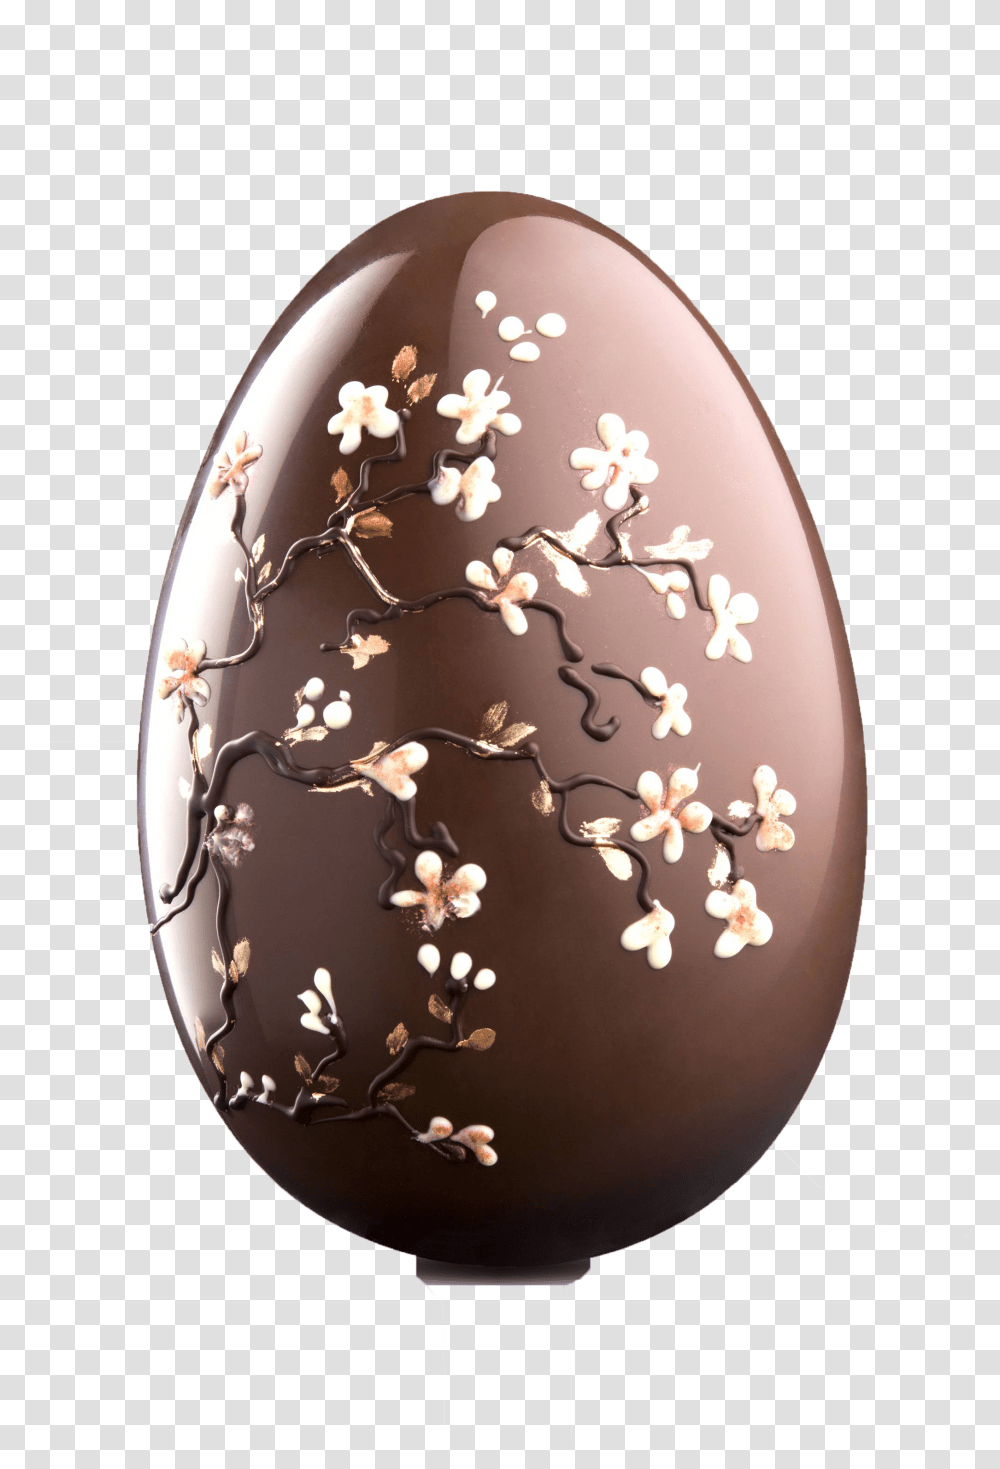 Chocolate Egg, Food, Easter Egg, Lamp, Dessert Transparent Png